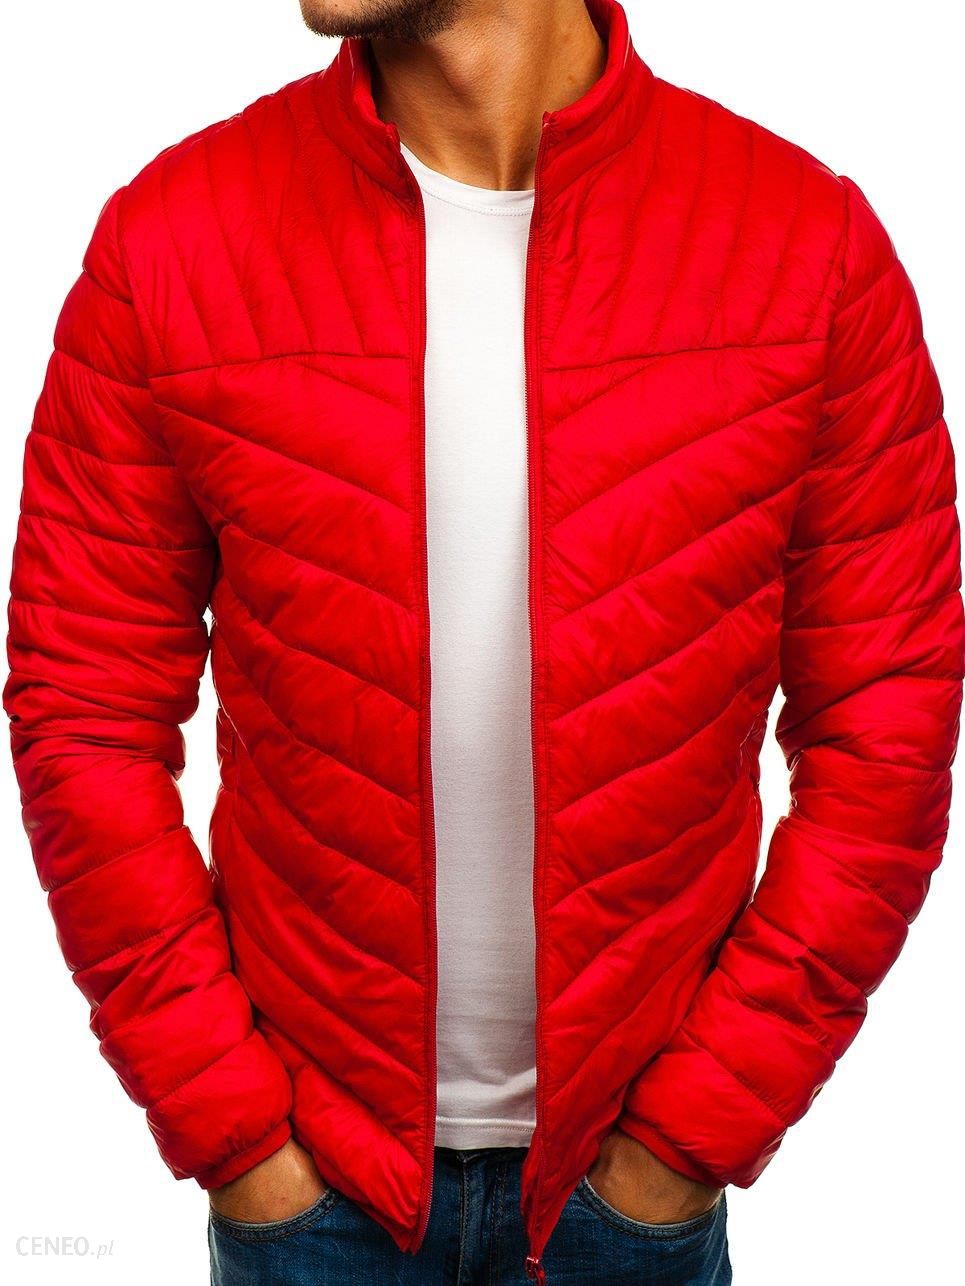 Красная мужская. Savage Sport куртка мужская красная. Токио Лэндри мужская красная куртка. Красная куртка мужская осенняя. Куртка мужская демисезонная красная.